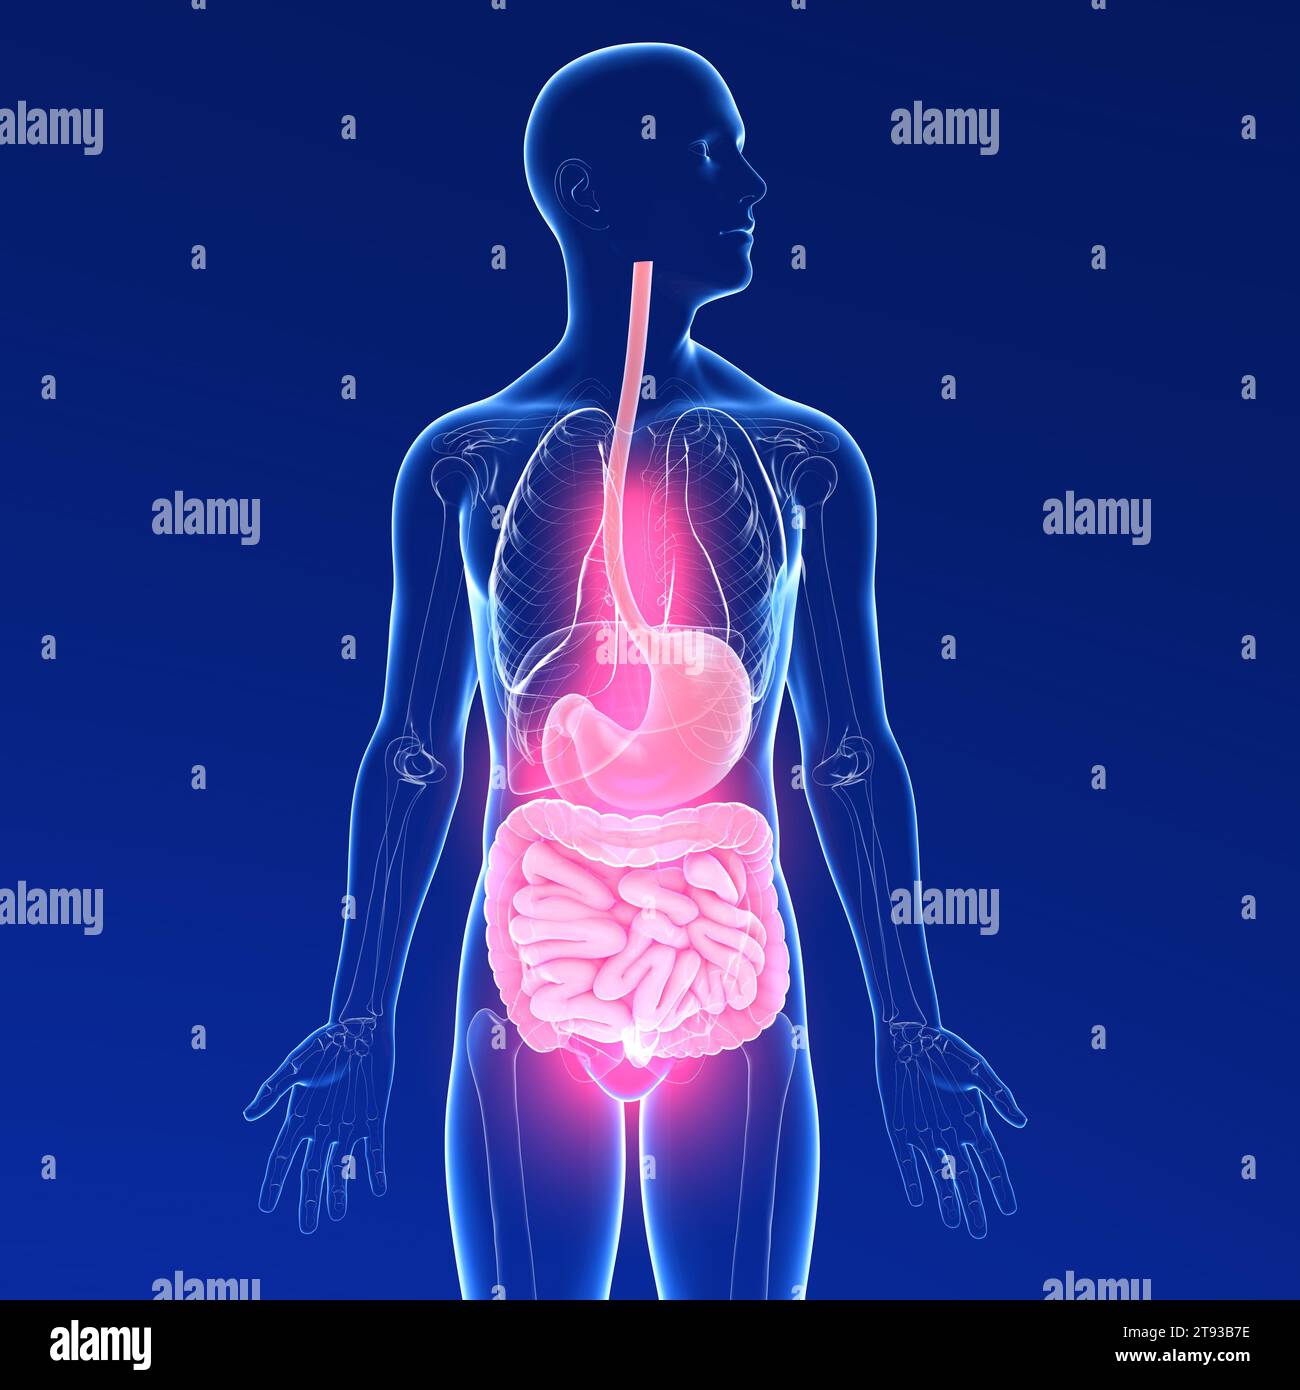 Illustrazione 3D trasparente dell'apparato digerente di un uomo che soffre di dolore. Anatomia cristallina dall'esofago e dallo stomaco all'intestino. Foto Stock